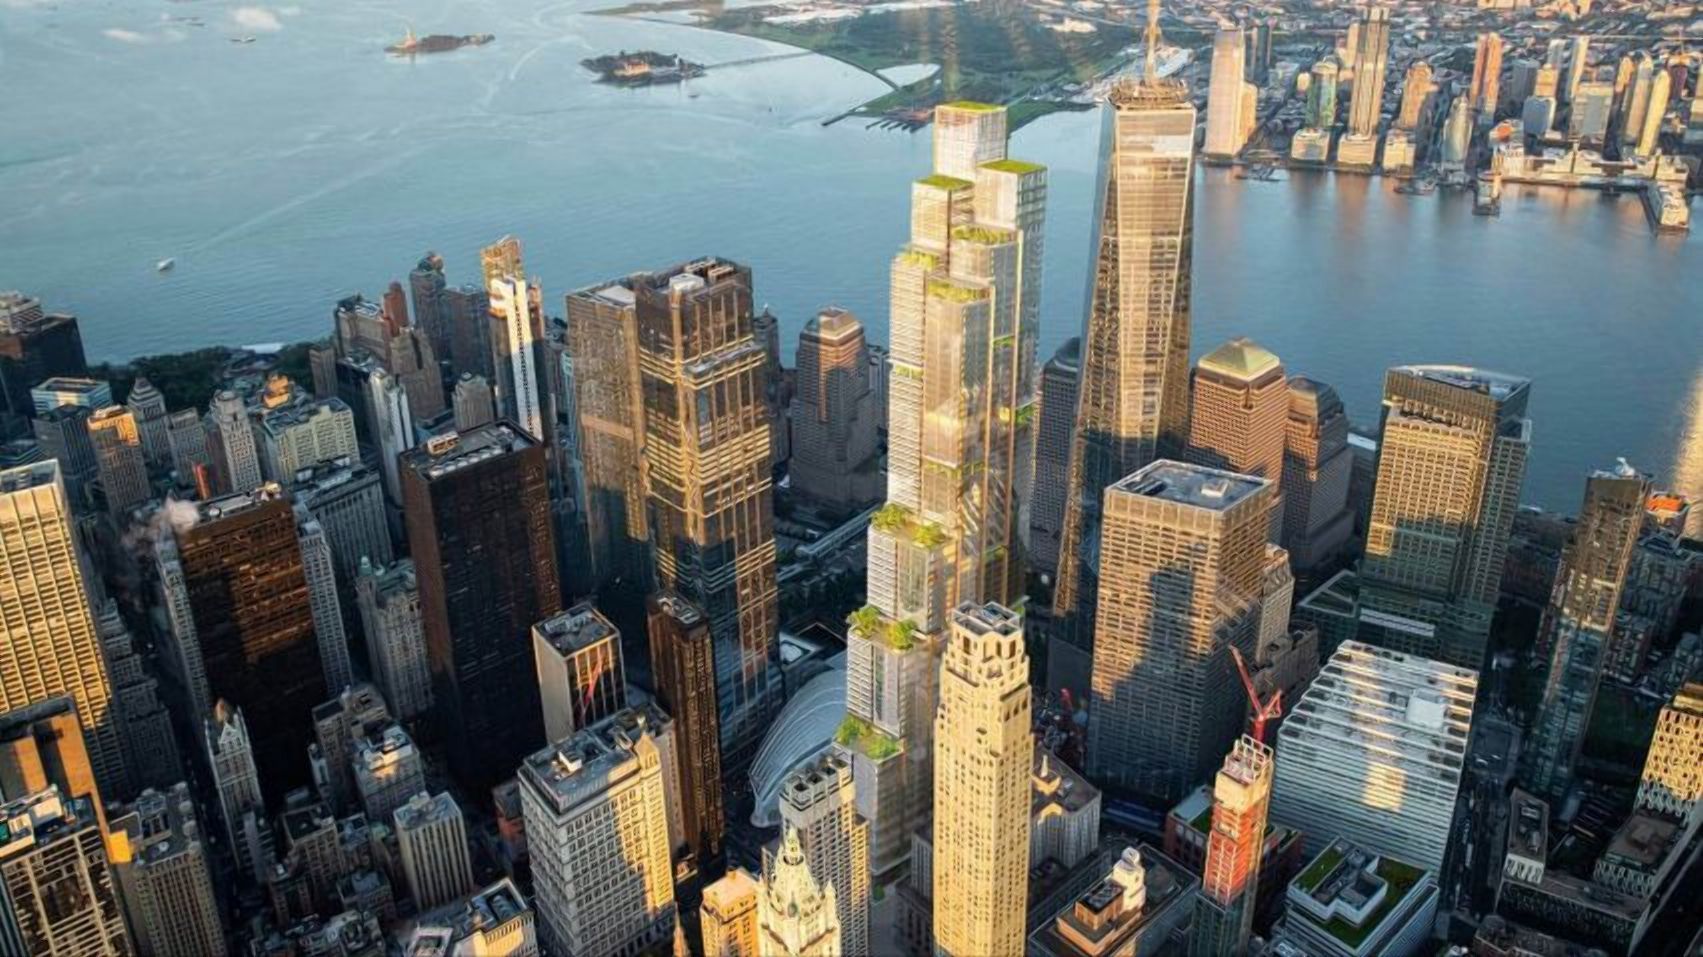 Ще один хмарочос Нью-Йорка: чим захоплює новітній проєкт - Нерухомість